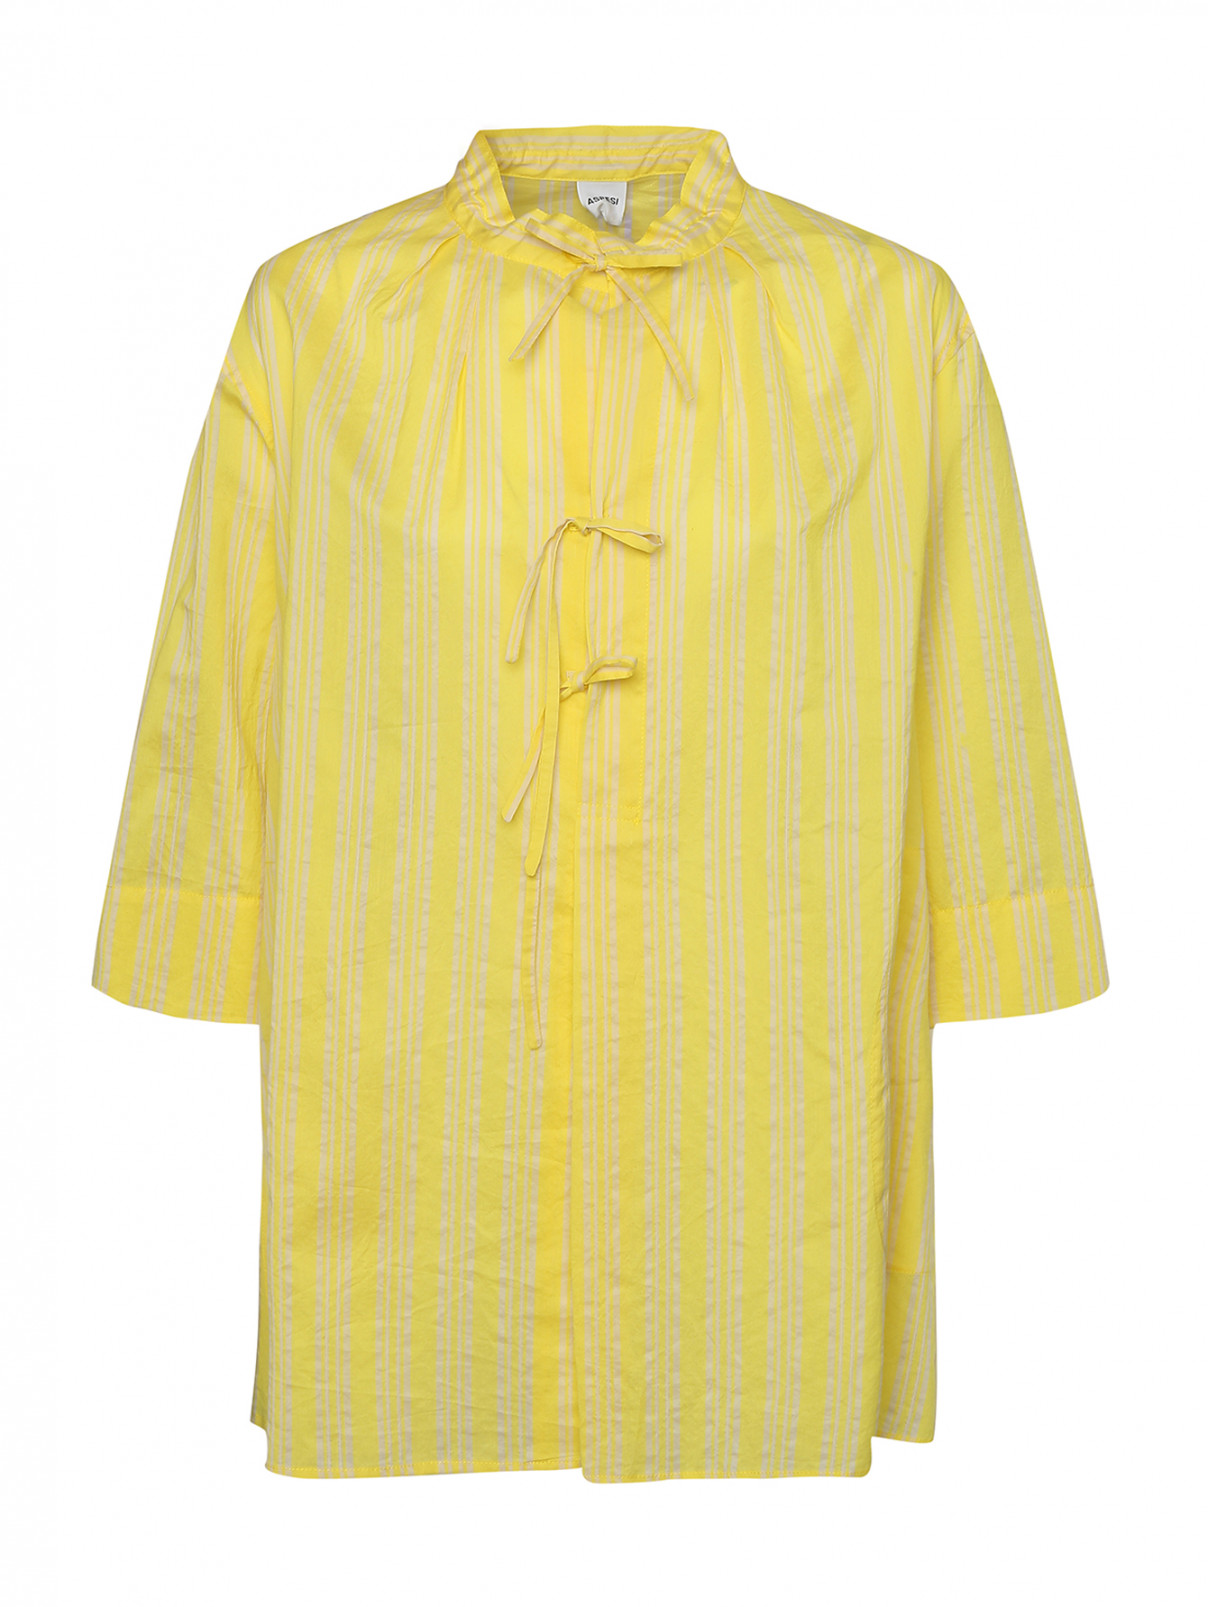 Блуза из хлопка и шелка в полоску Aspesi  –  Общий вид  – Цвет:  Желтый